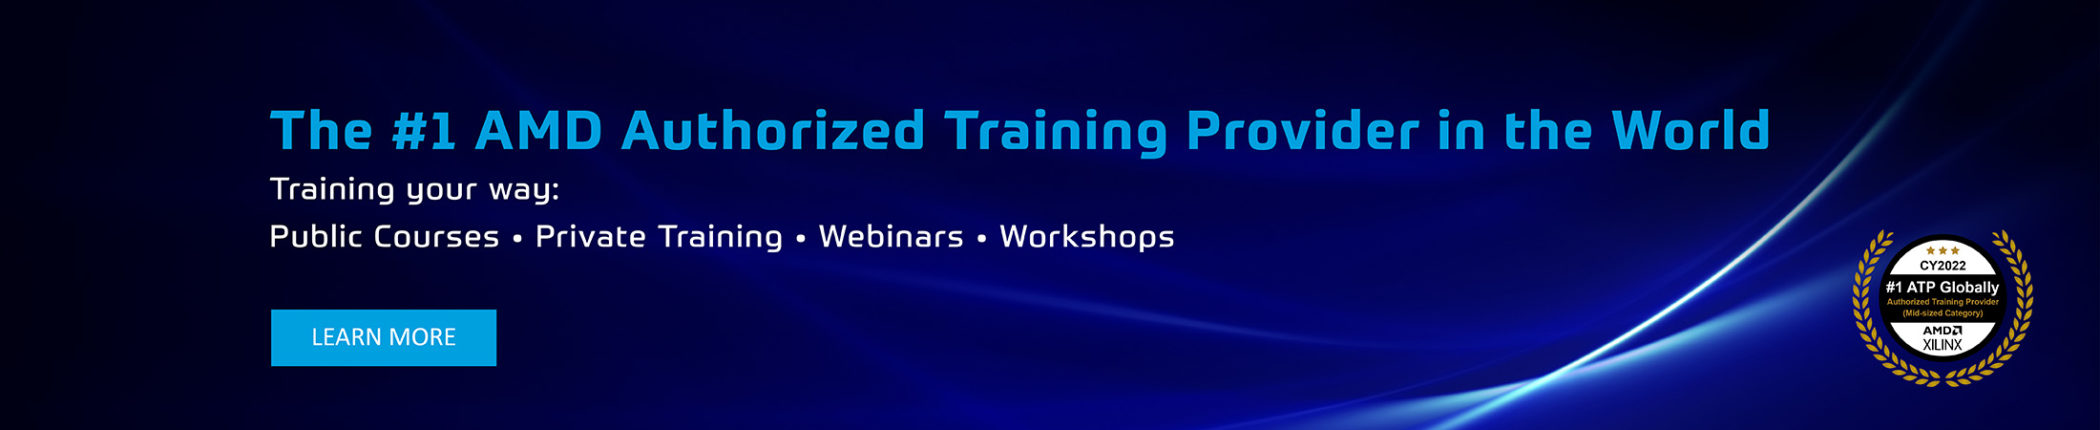 #1 AMD Authorized Training Provider